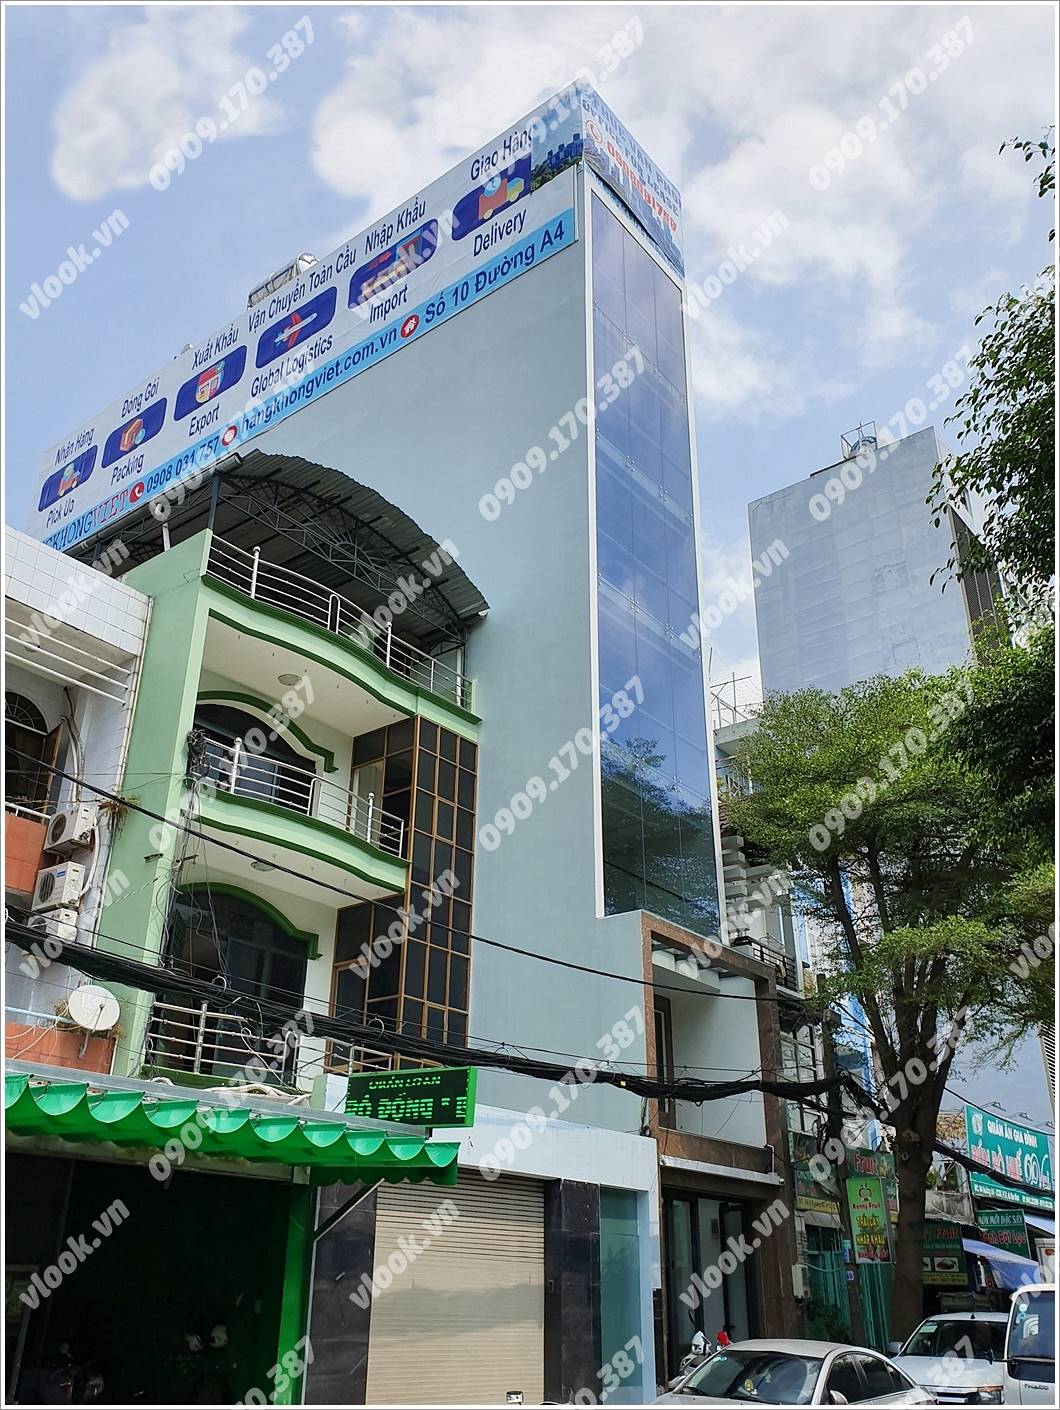 Mặt trước cao ốc cho thuê văn phòng Global Building, Đường A4, Quận Tân Bình, TPHCM - vlook.vn